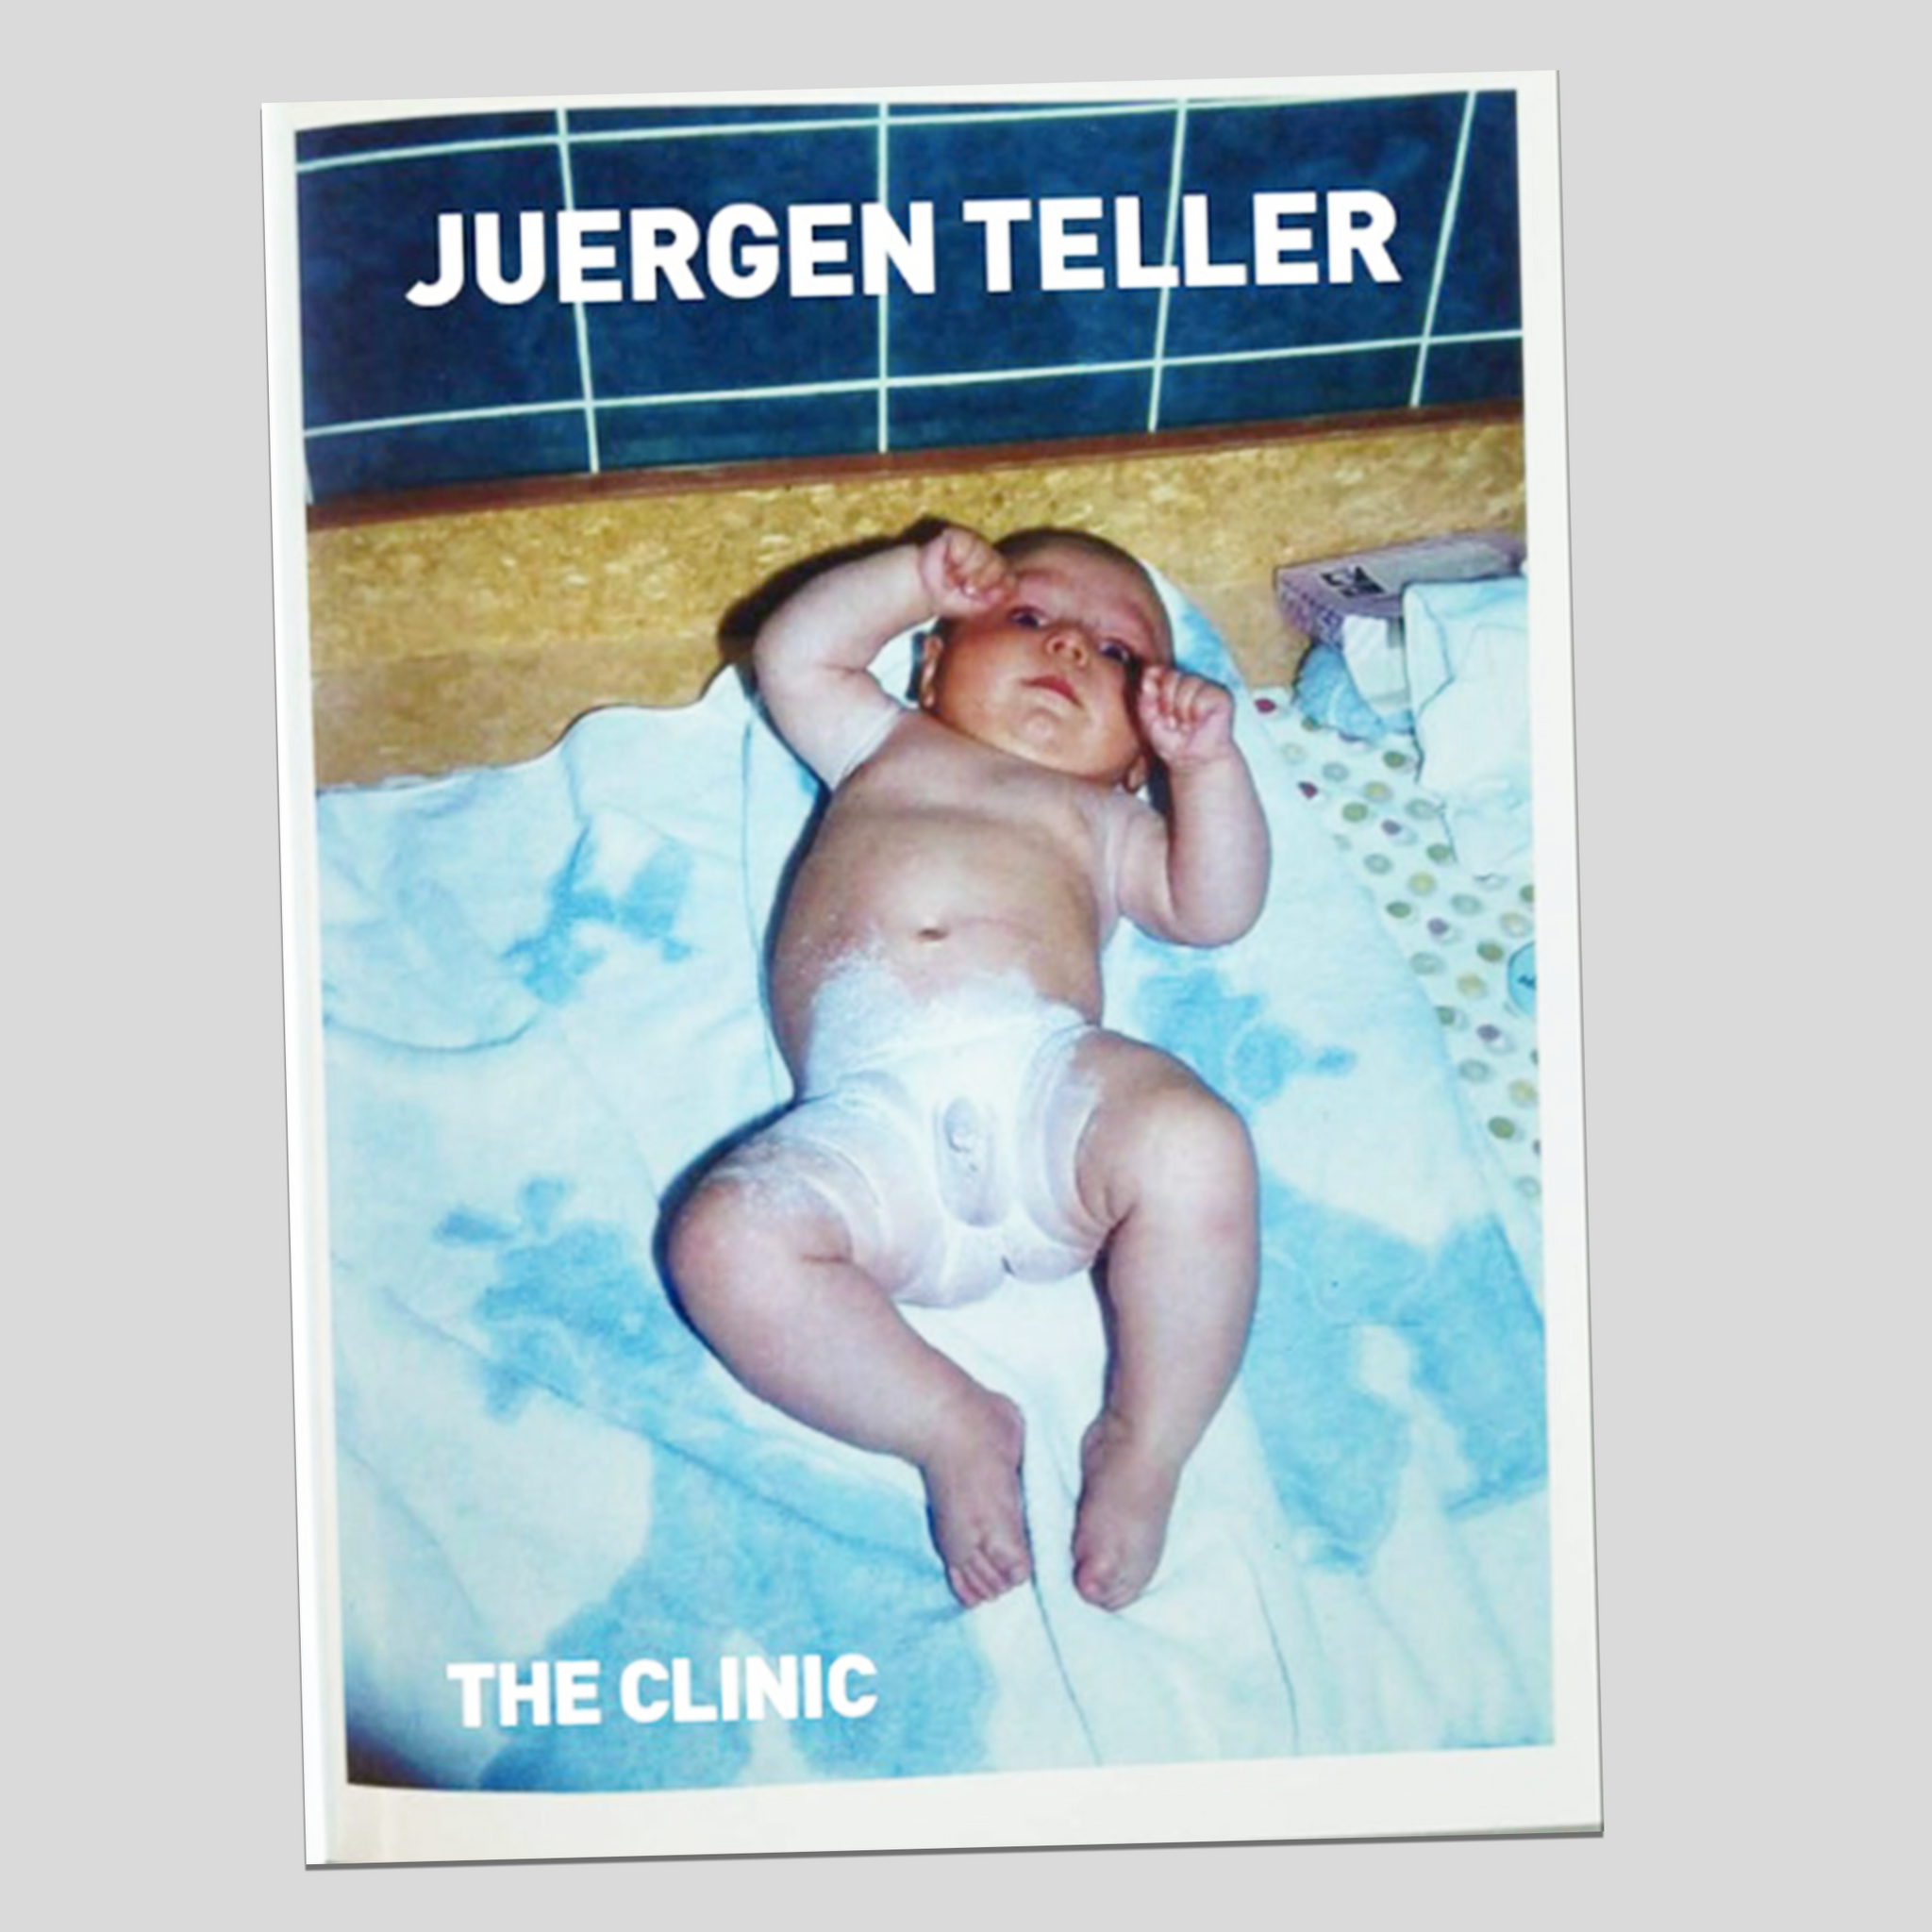 The Clinic - Juergen Teller